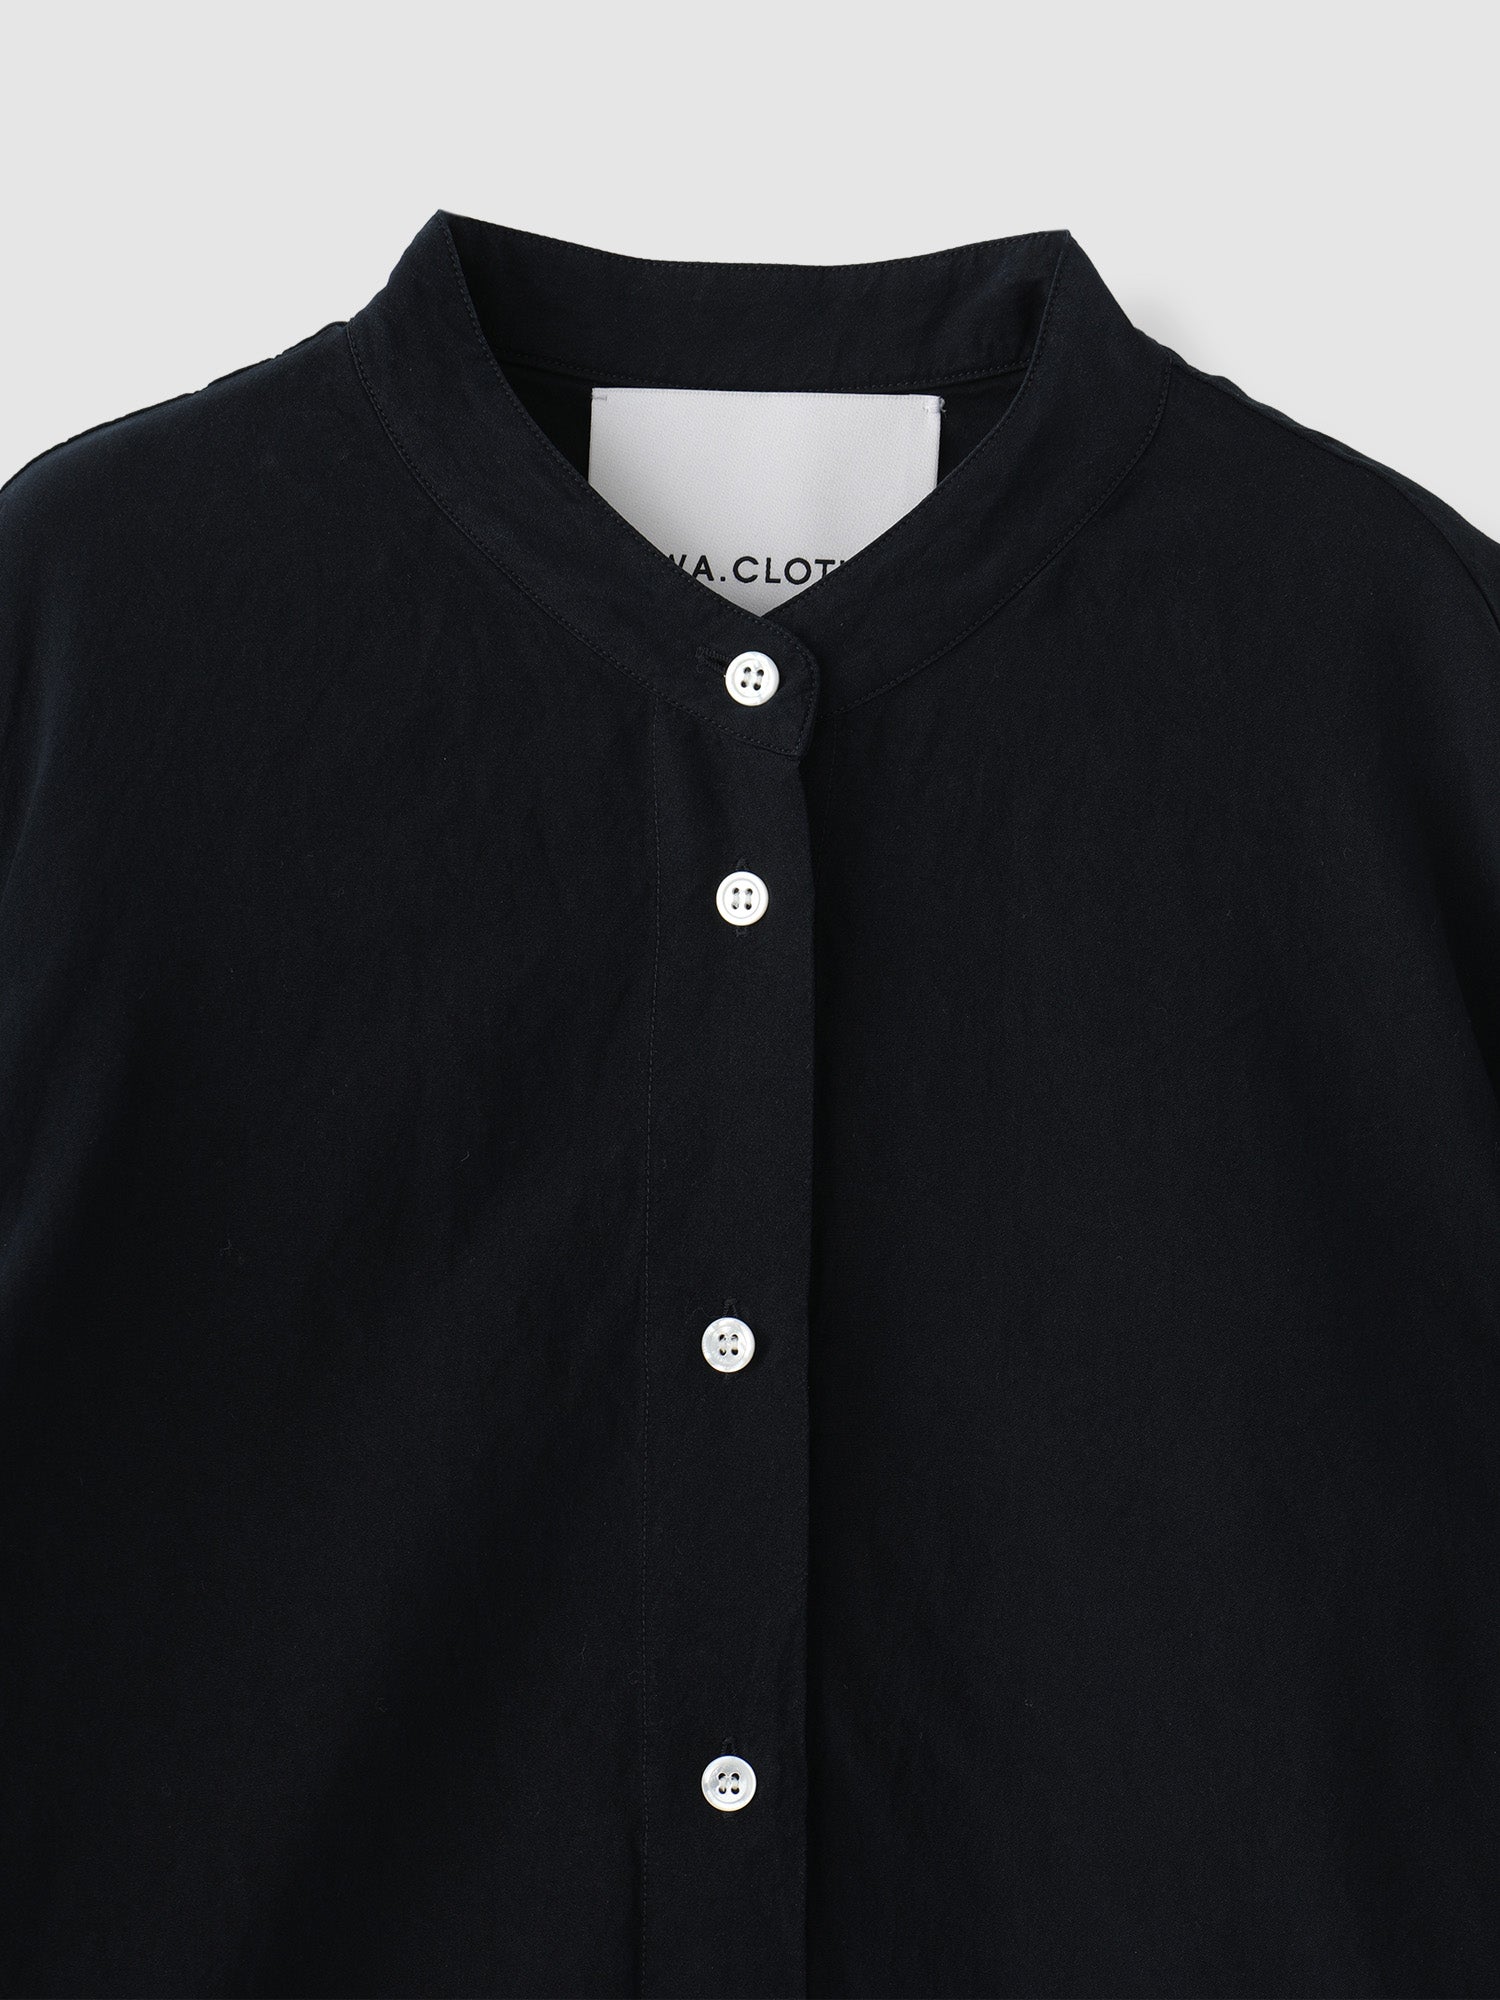 CT COLLAB BAND COLLAR SHIRTS <br> デザインと素材に拘ったバンドカラーシャツ